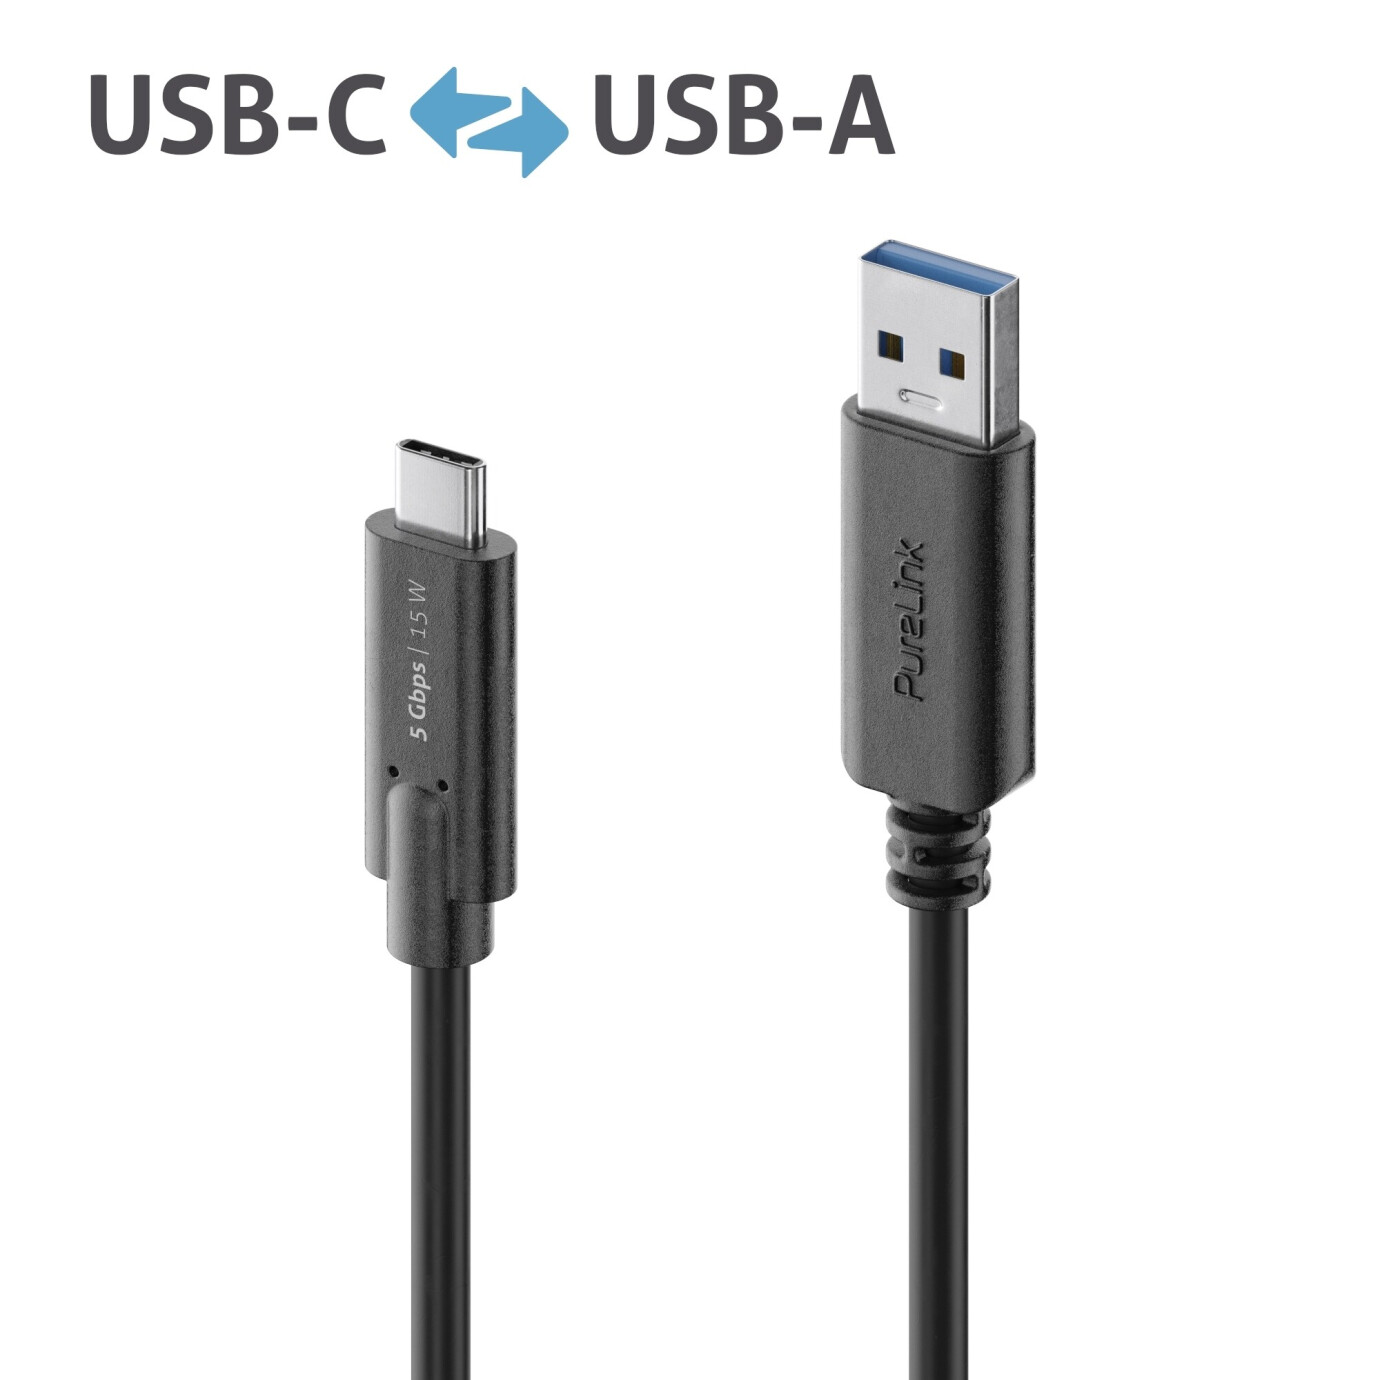 Purelink IS2601-010 USB-C auf USB-A Kabel 1m schwarz